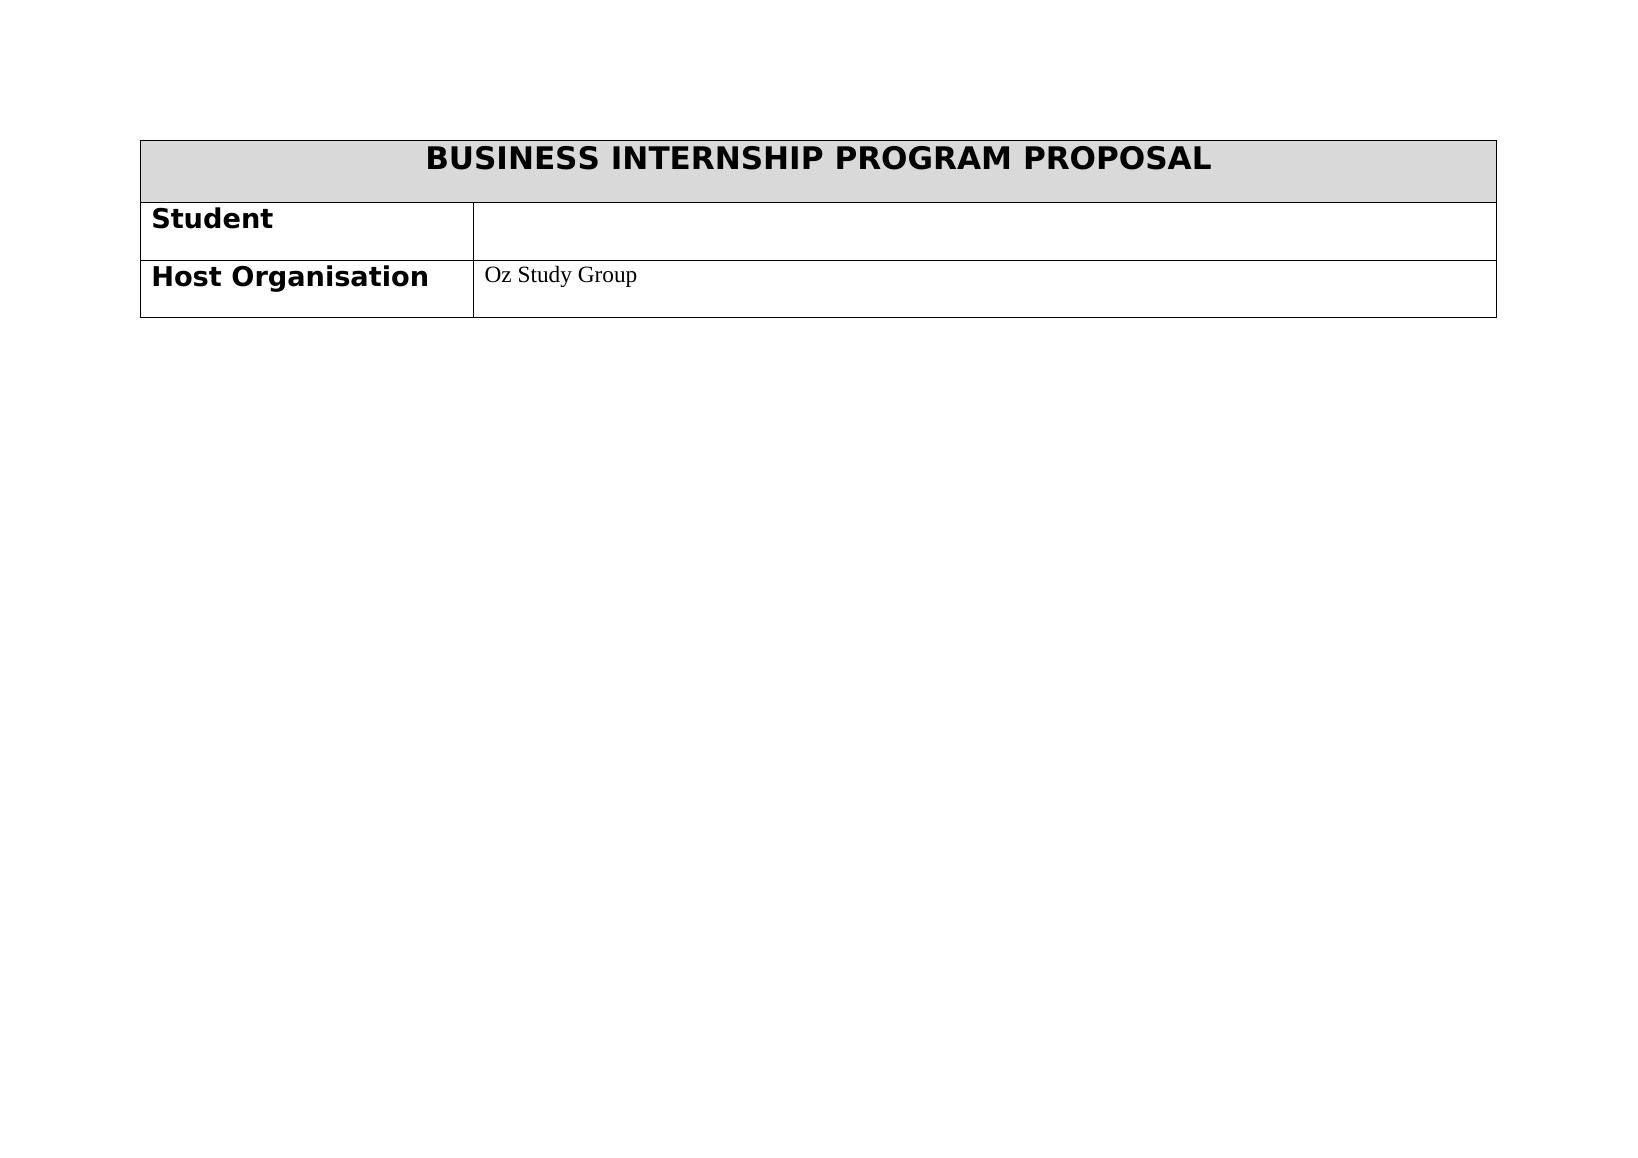 Business Internship Program Proposal Assignment_1